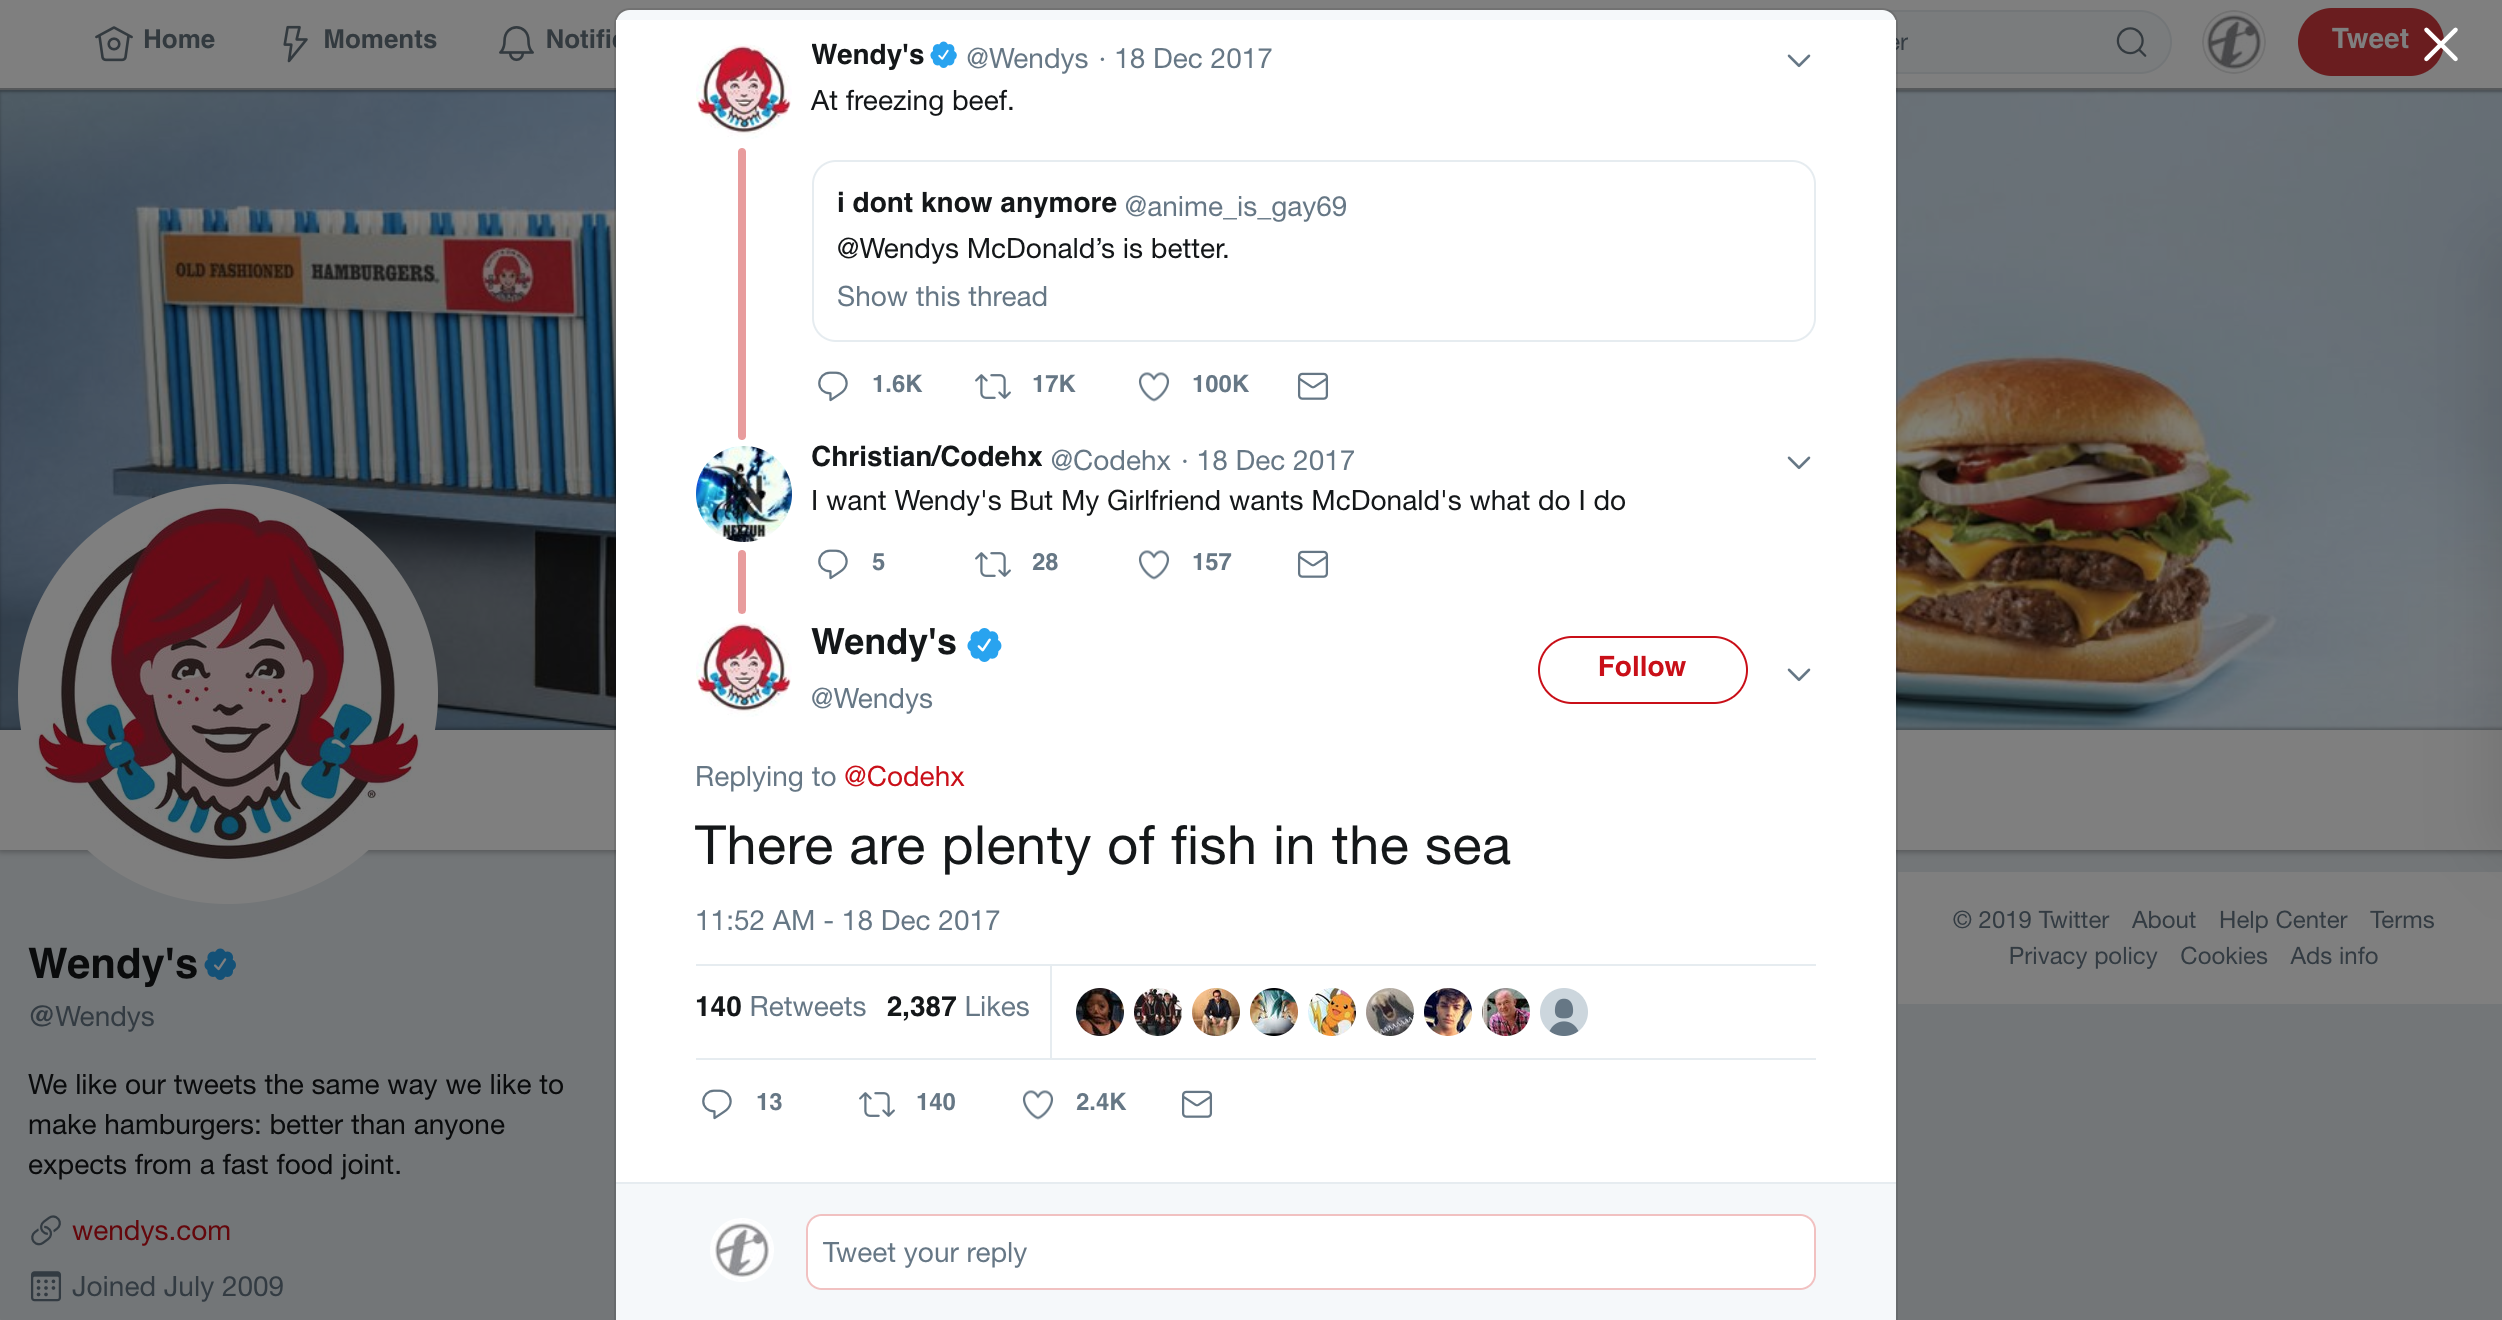 Wendys tweet